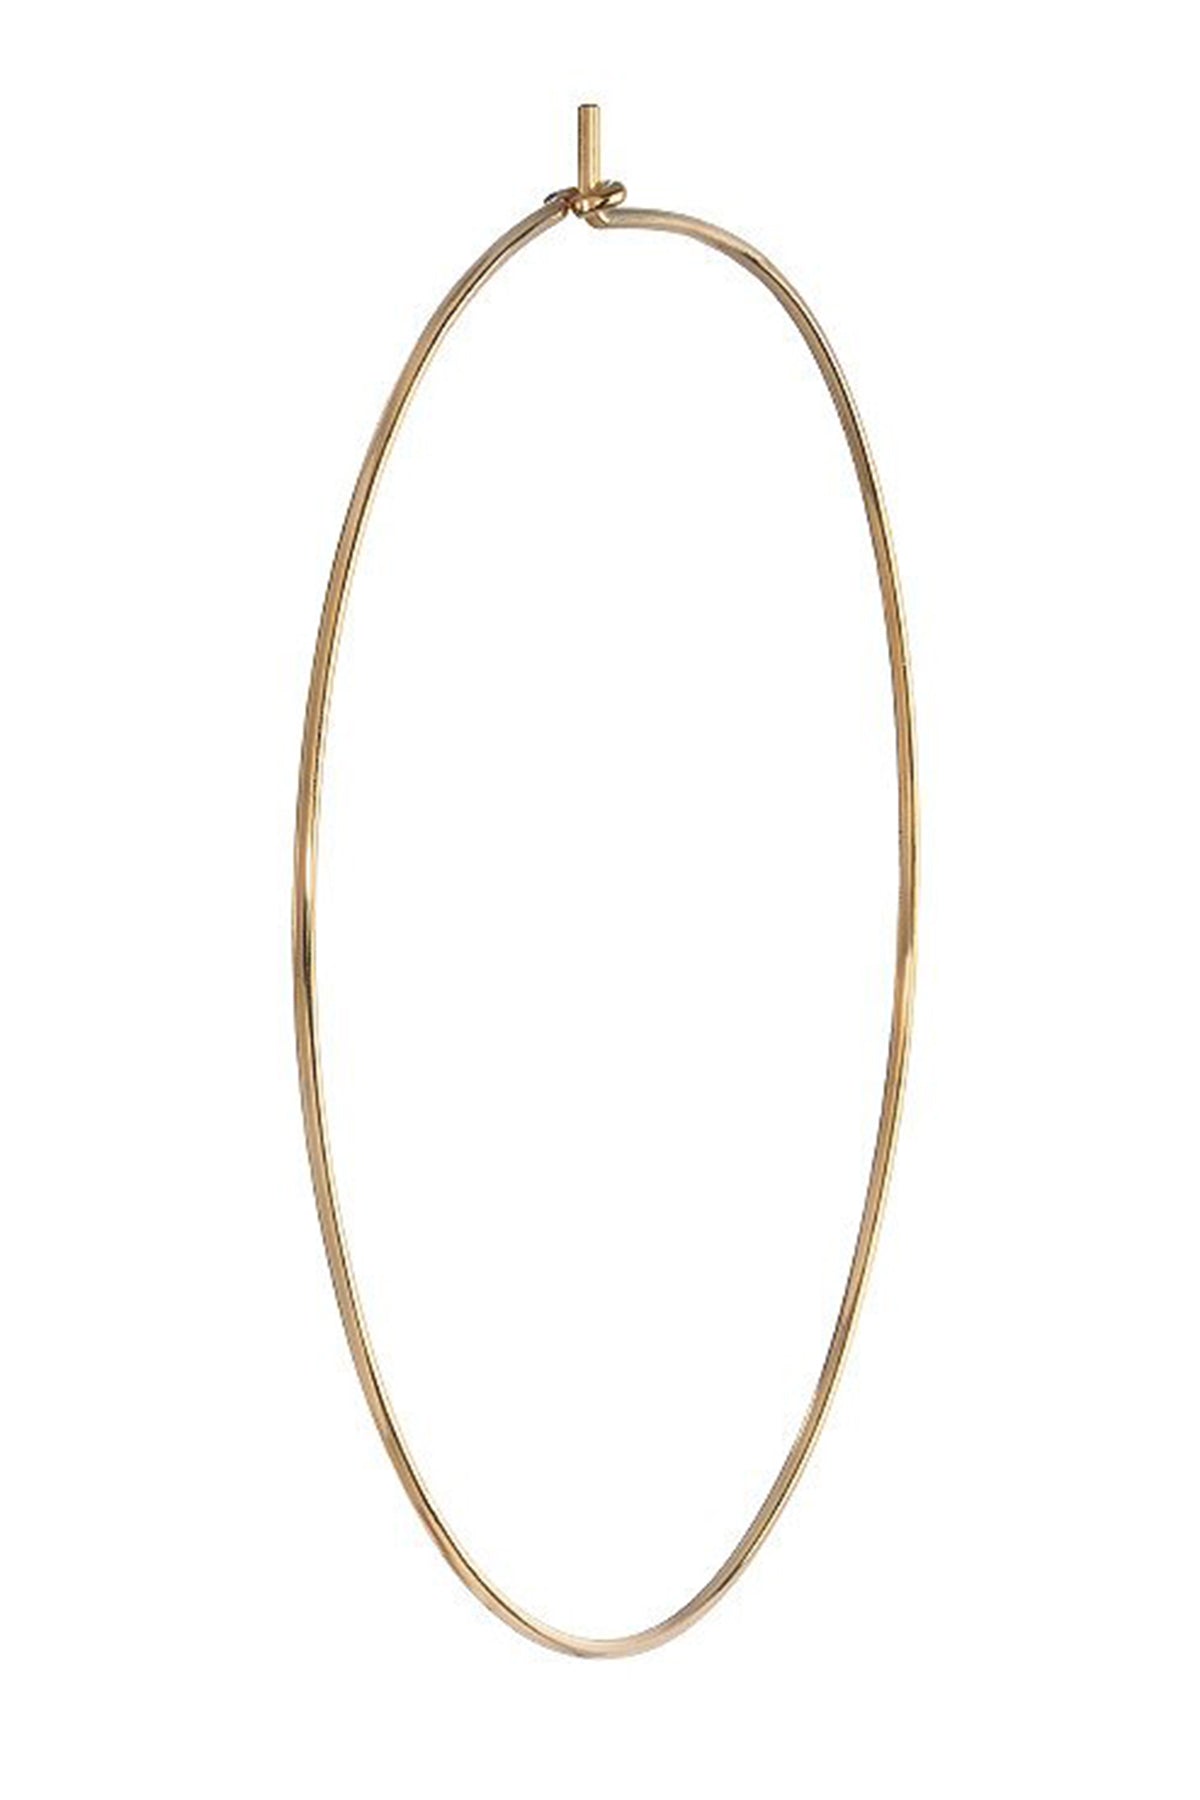 Large Hoop Earrings by Bychari Gold 2-22386190942401